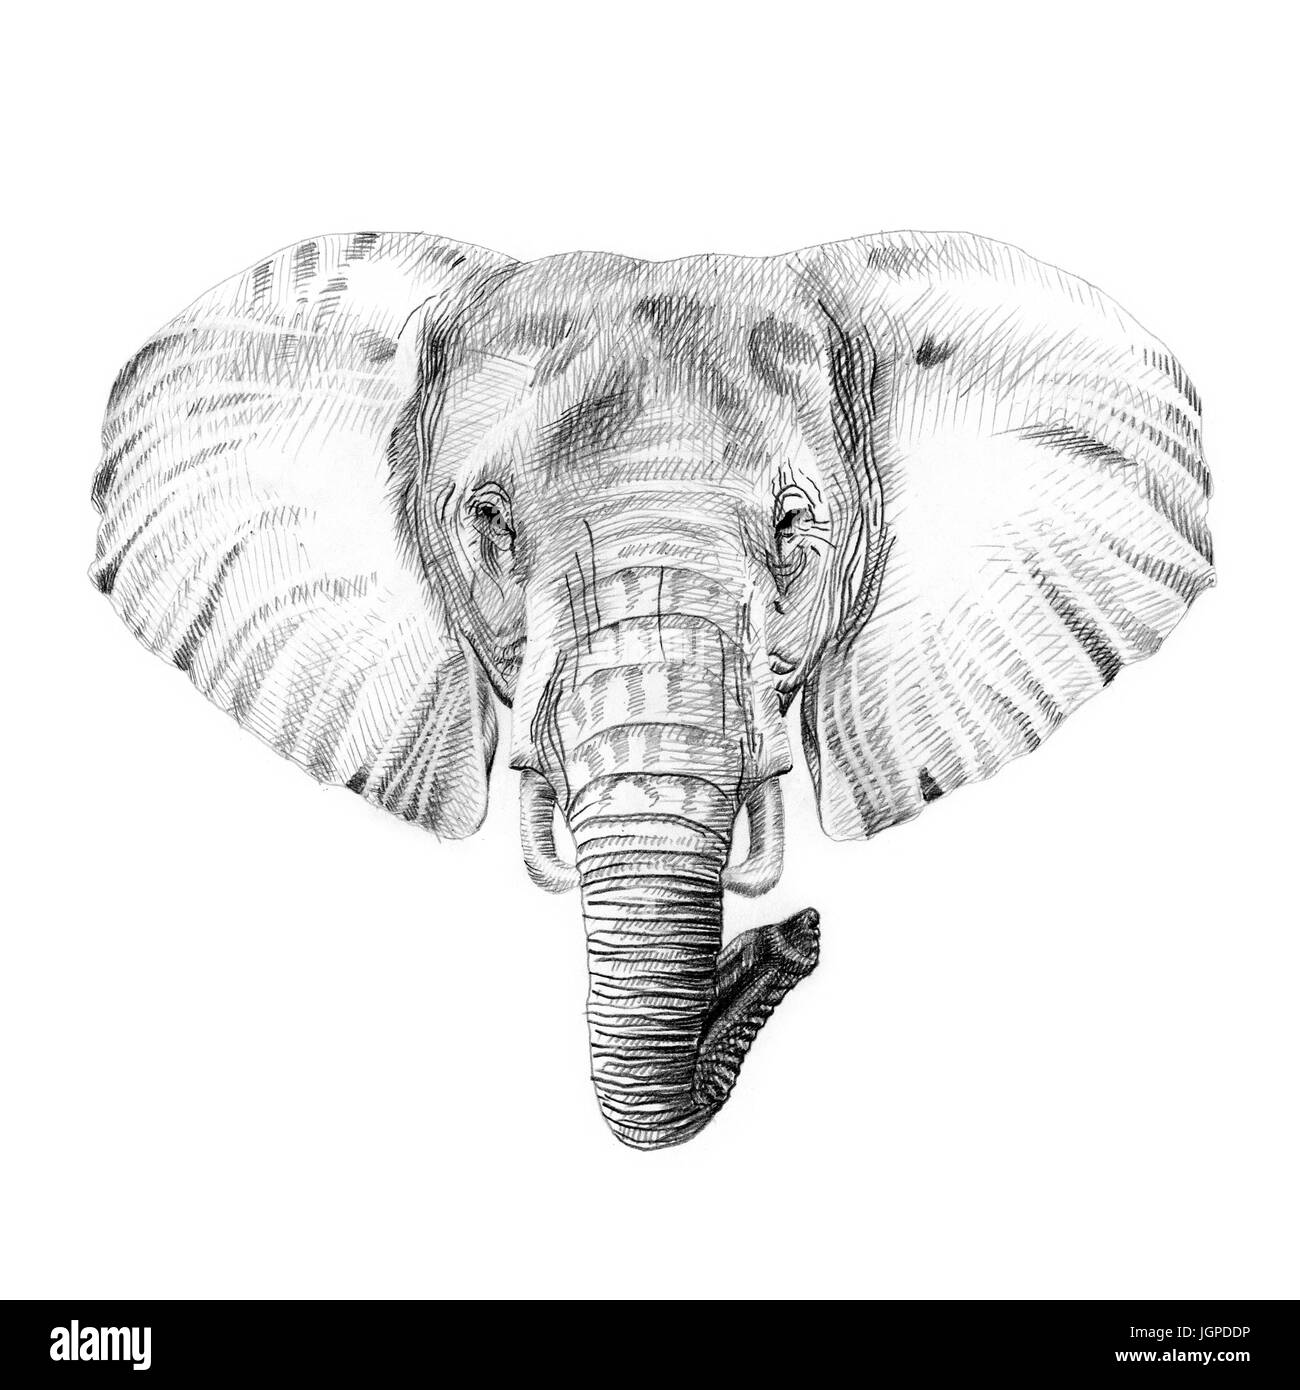 Isolierte elefant zeichnen Schwarzweiß-Stockfotos und -bilder - Alamy